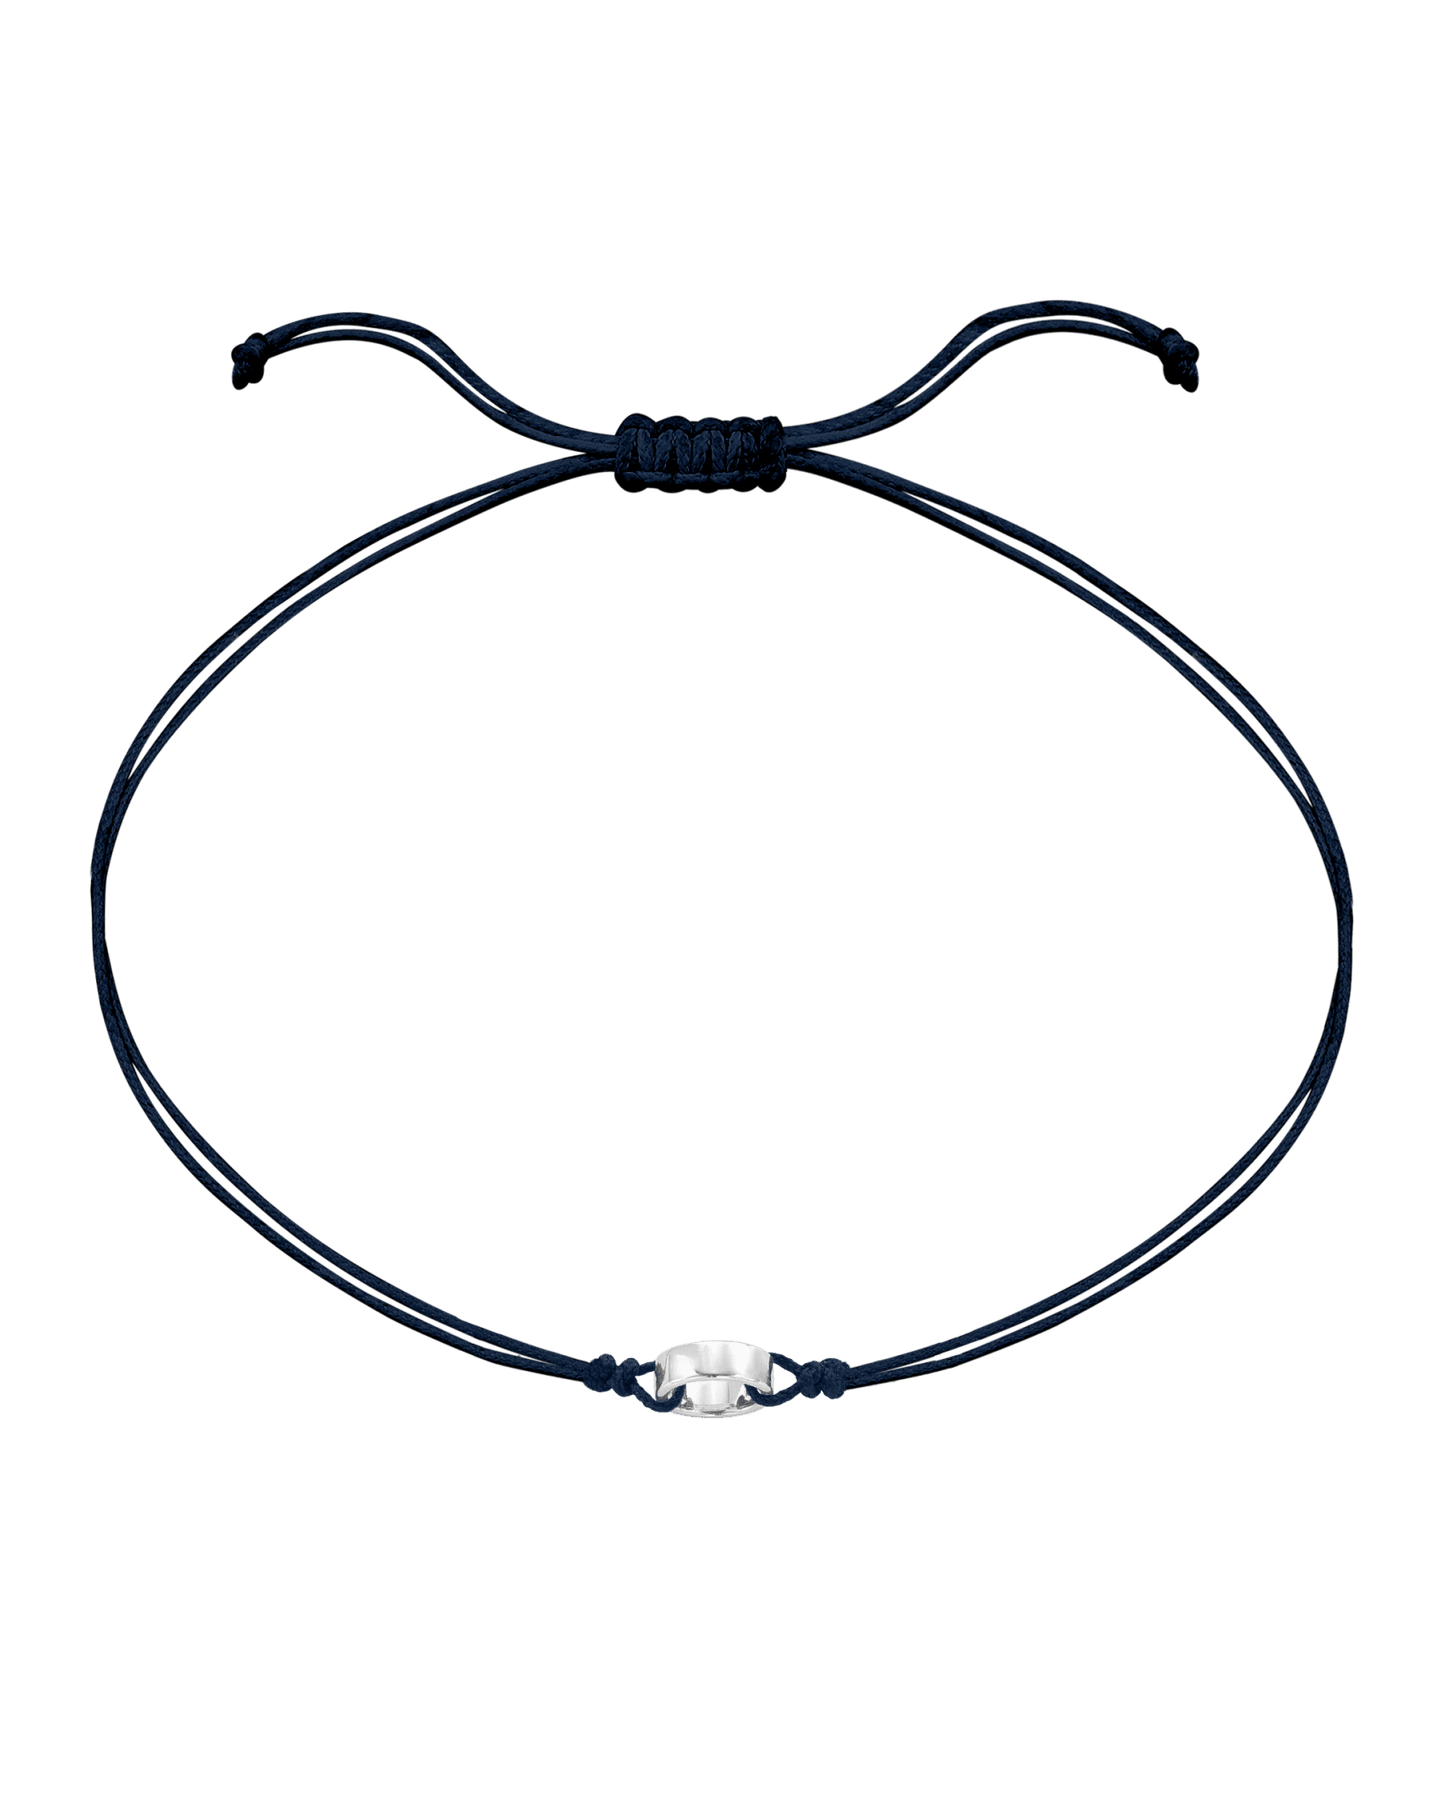 Engravable Links of Love - 925 Sterling Silver Bracelets magal-dev 1 Navy Blue 